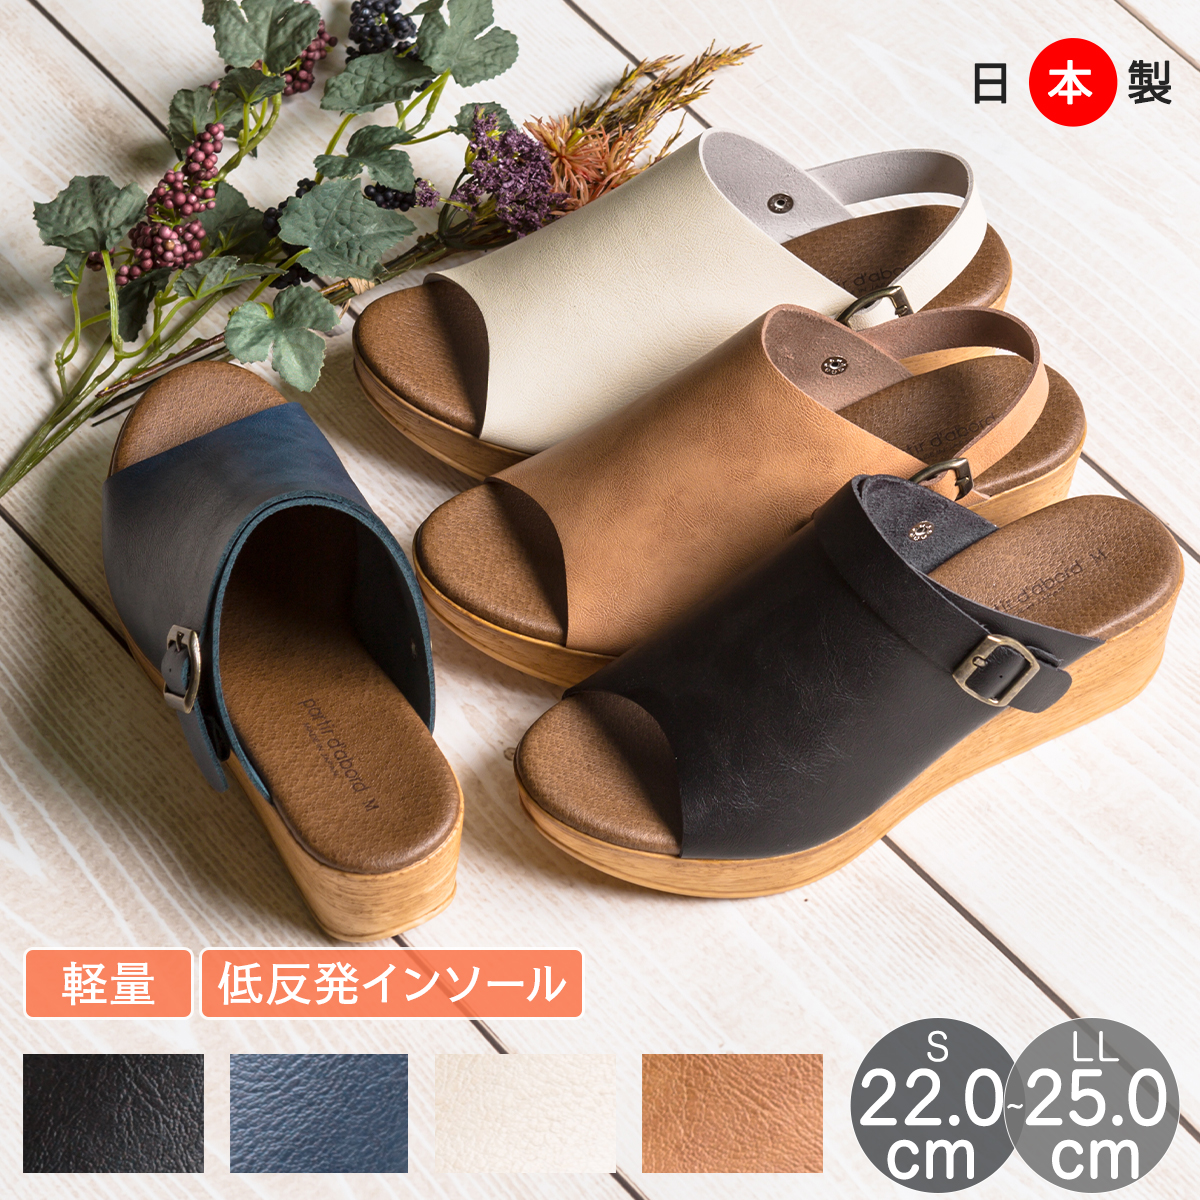 レディースシューズ 現品 サンダル 2way 新作続 厚底 5cm ウェッジソール 日本製 サボサンダル 25%OFFクーポン配布中 婦人靴 靴